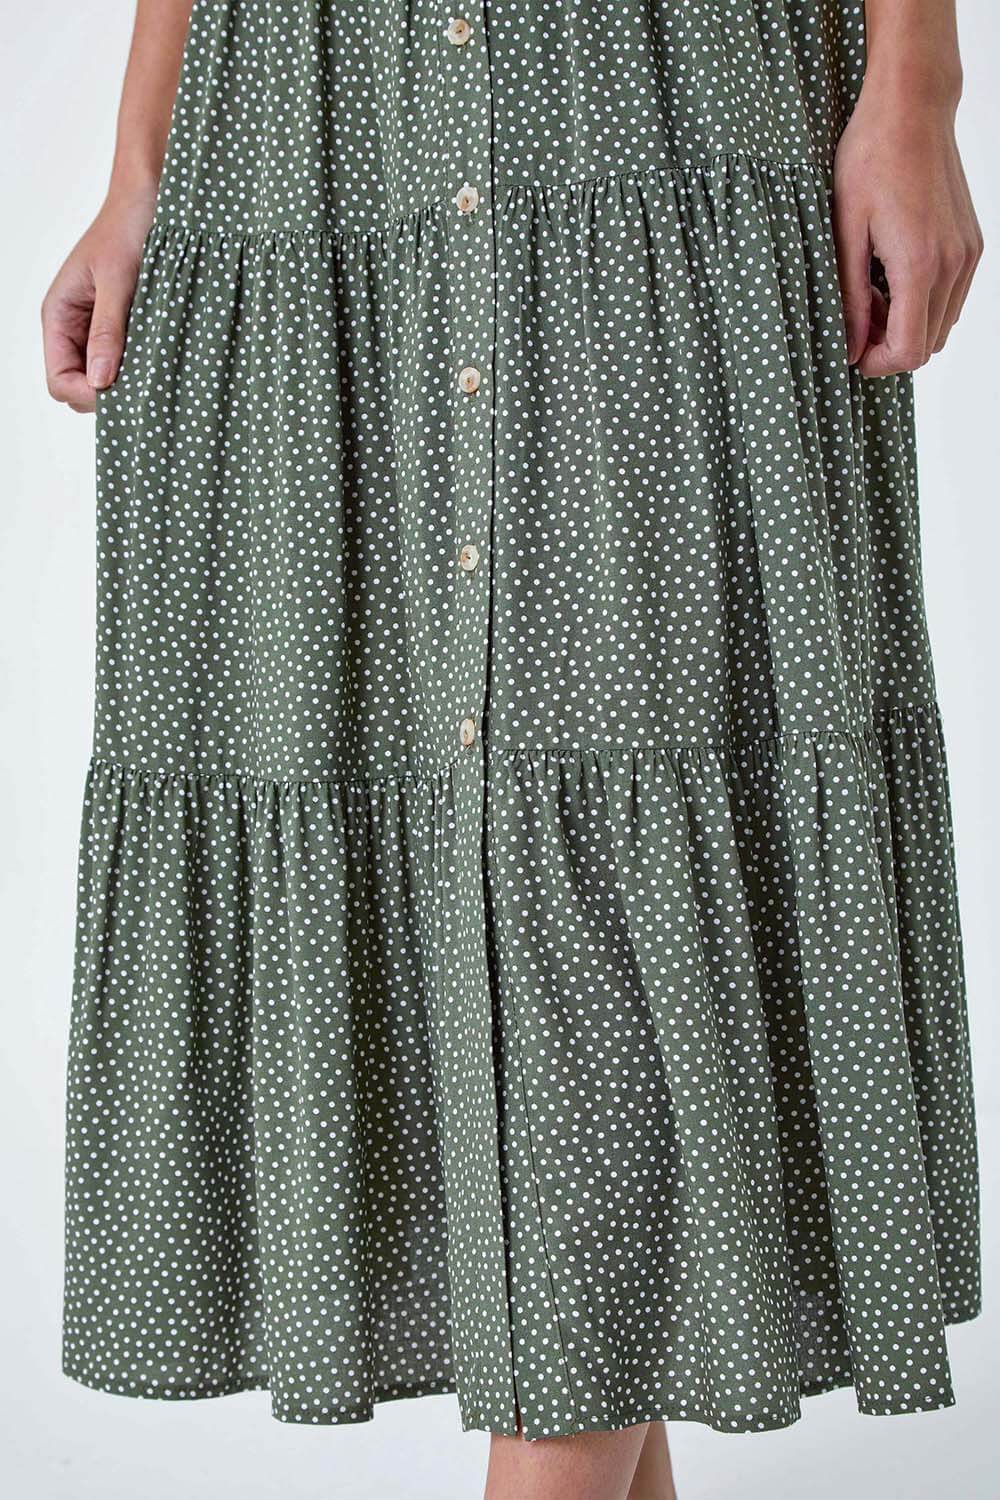 KHAKI Petite Polka Dot Midi Shirt Dress, Image 5 of 5